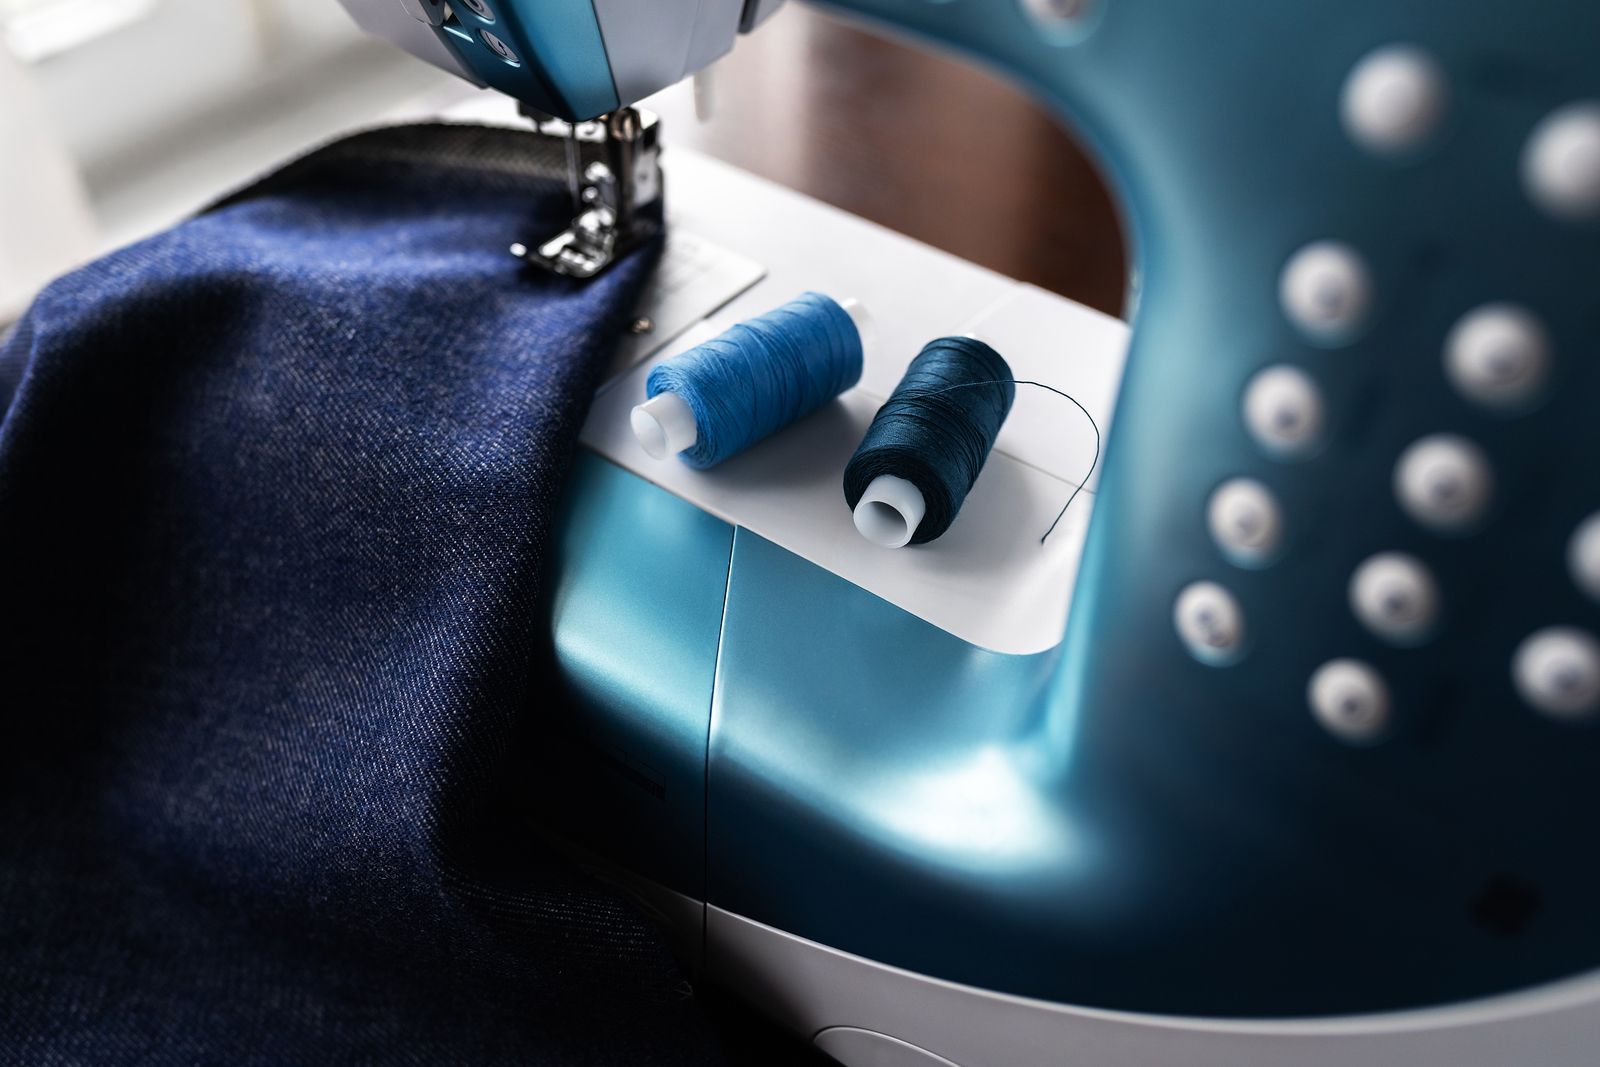 Cómo elegir una máquina de coser nueva que se ajuste a mis conocimientos de costura